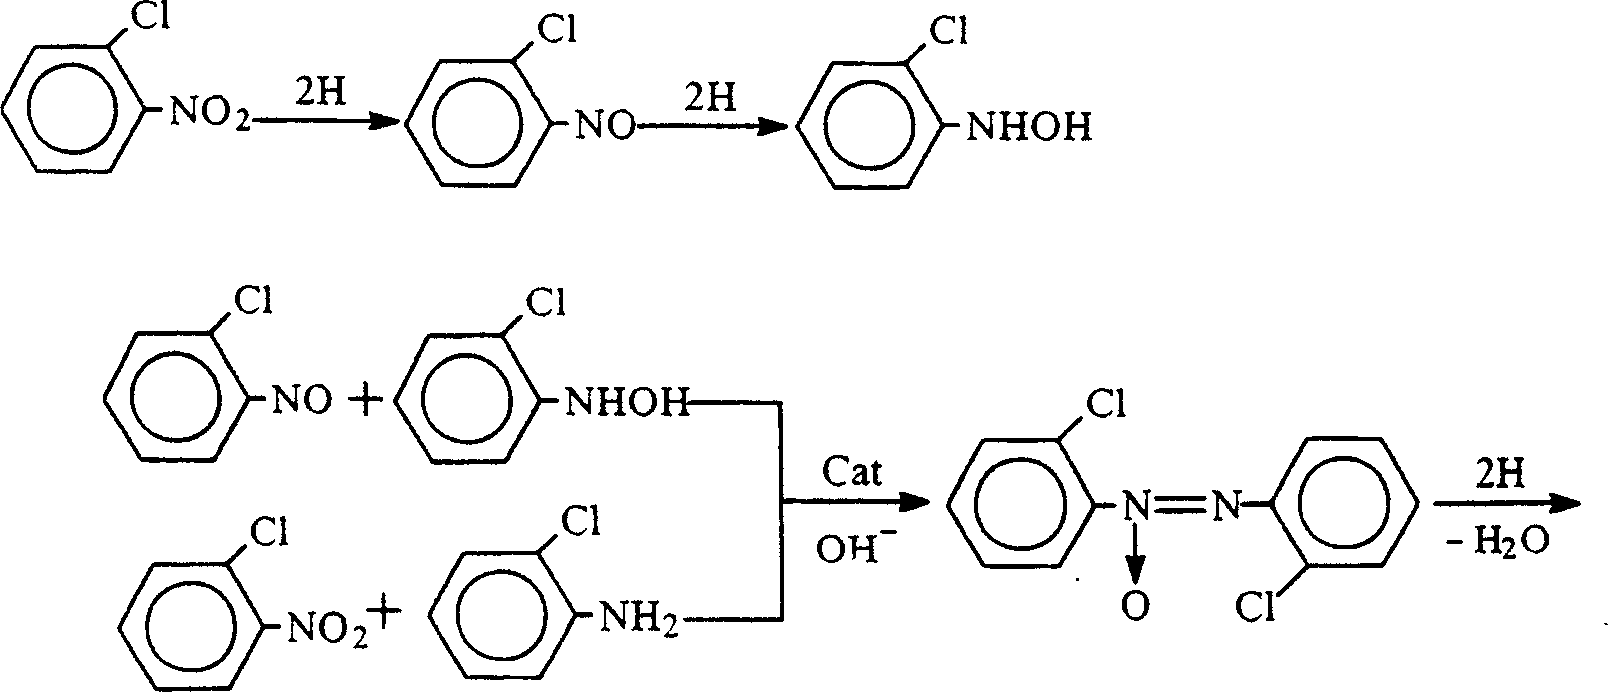 Process for preparing 2,2'-dichloro-hydrazobenzene